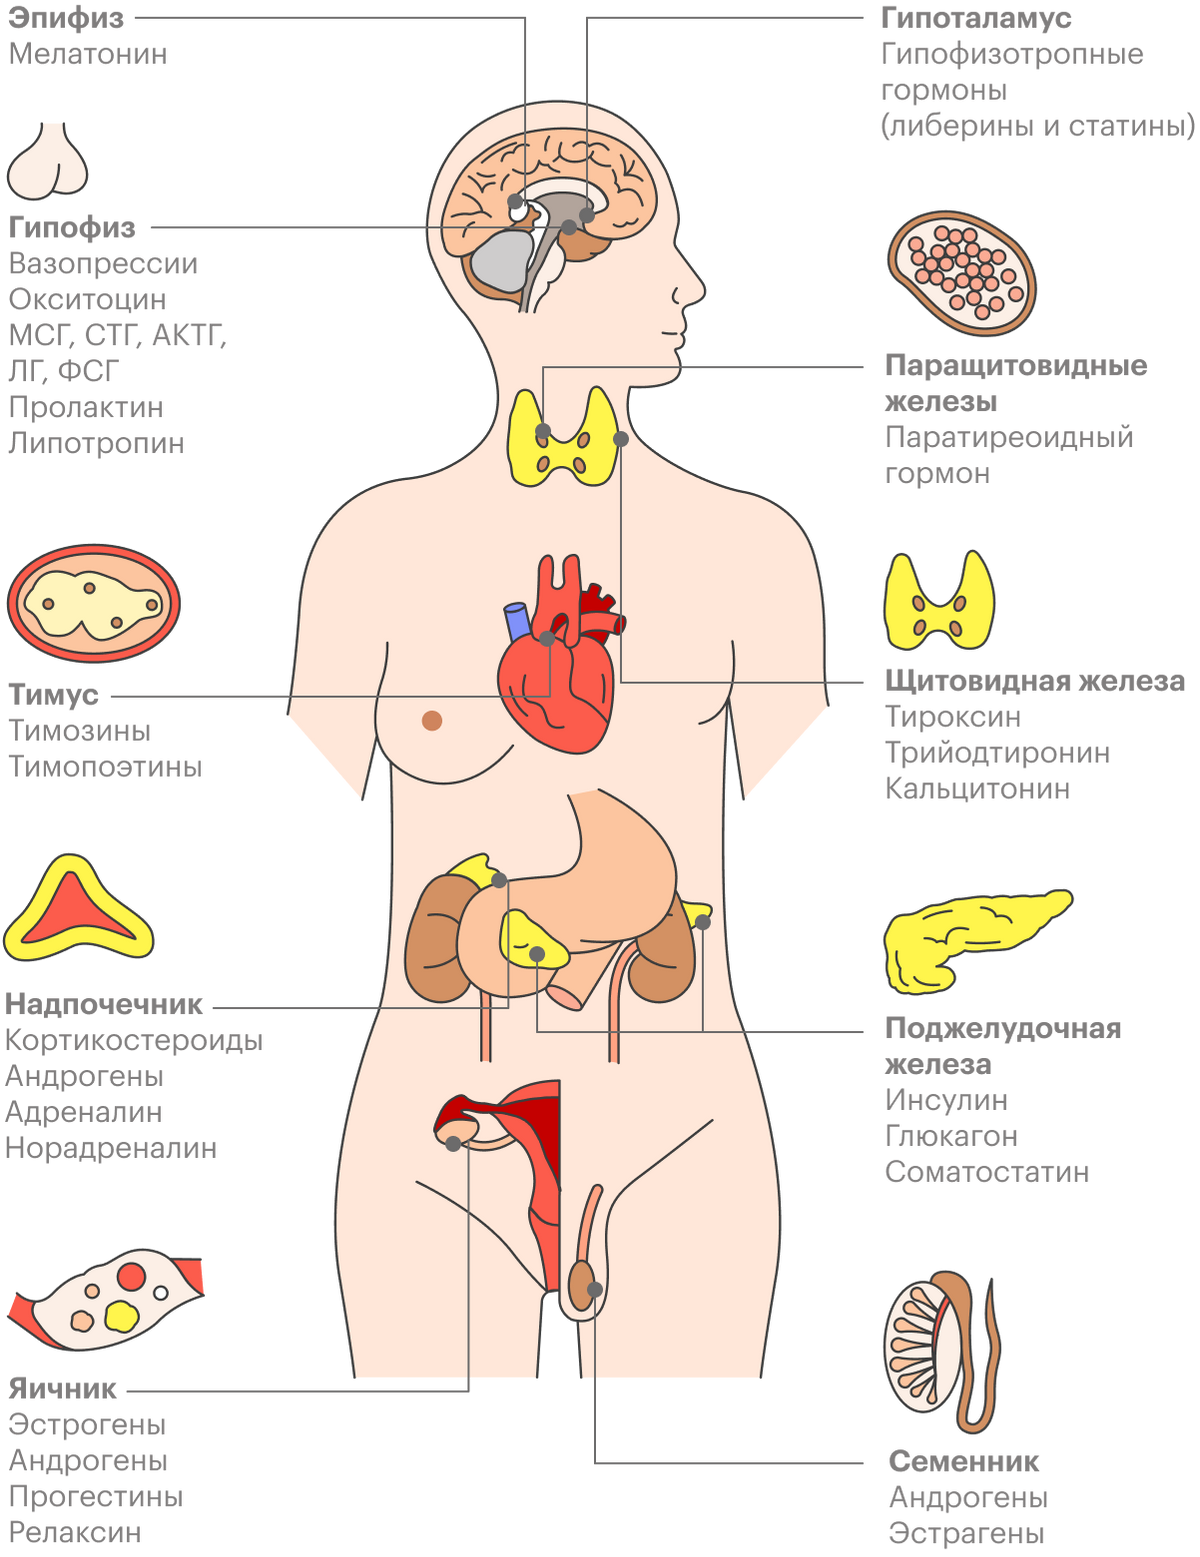 Эндокринная система человека состоит из разных желез, выделяющих разнообразные гормоны. У каждой железы внутренней секреции есть свои заболевания, связанные с избыточным или недостаточным синтезом того или иного гормона